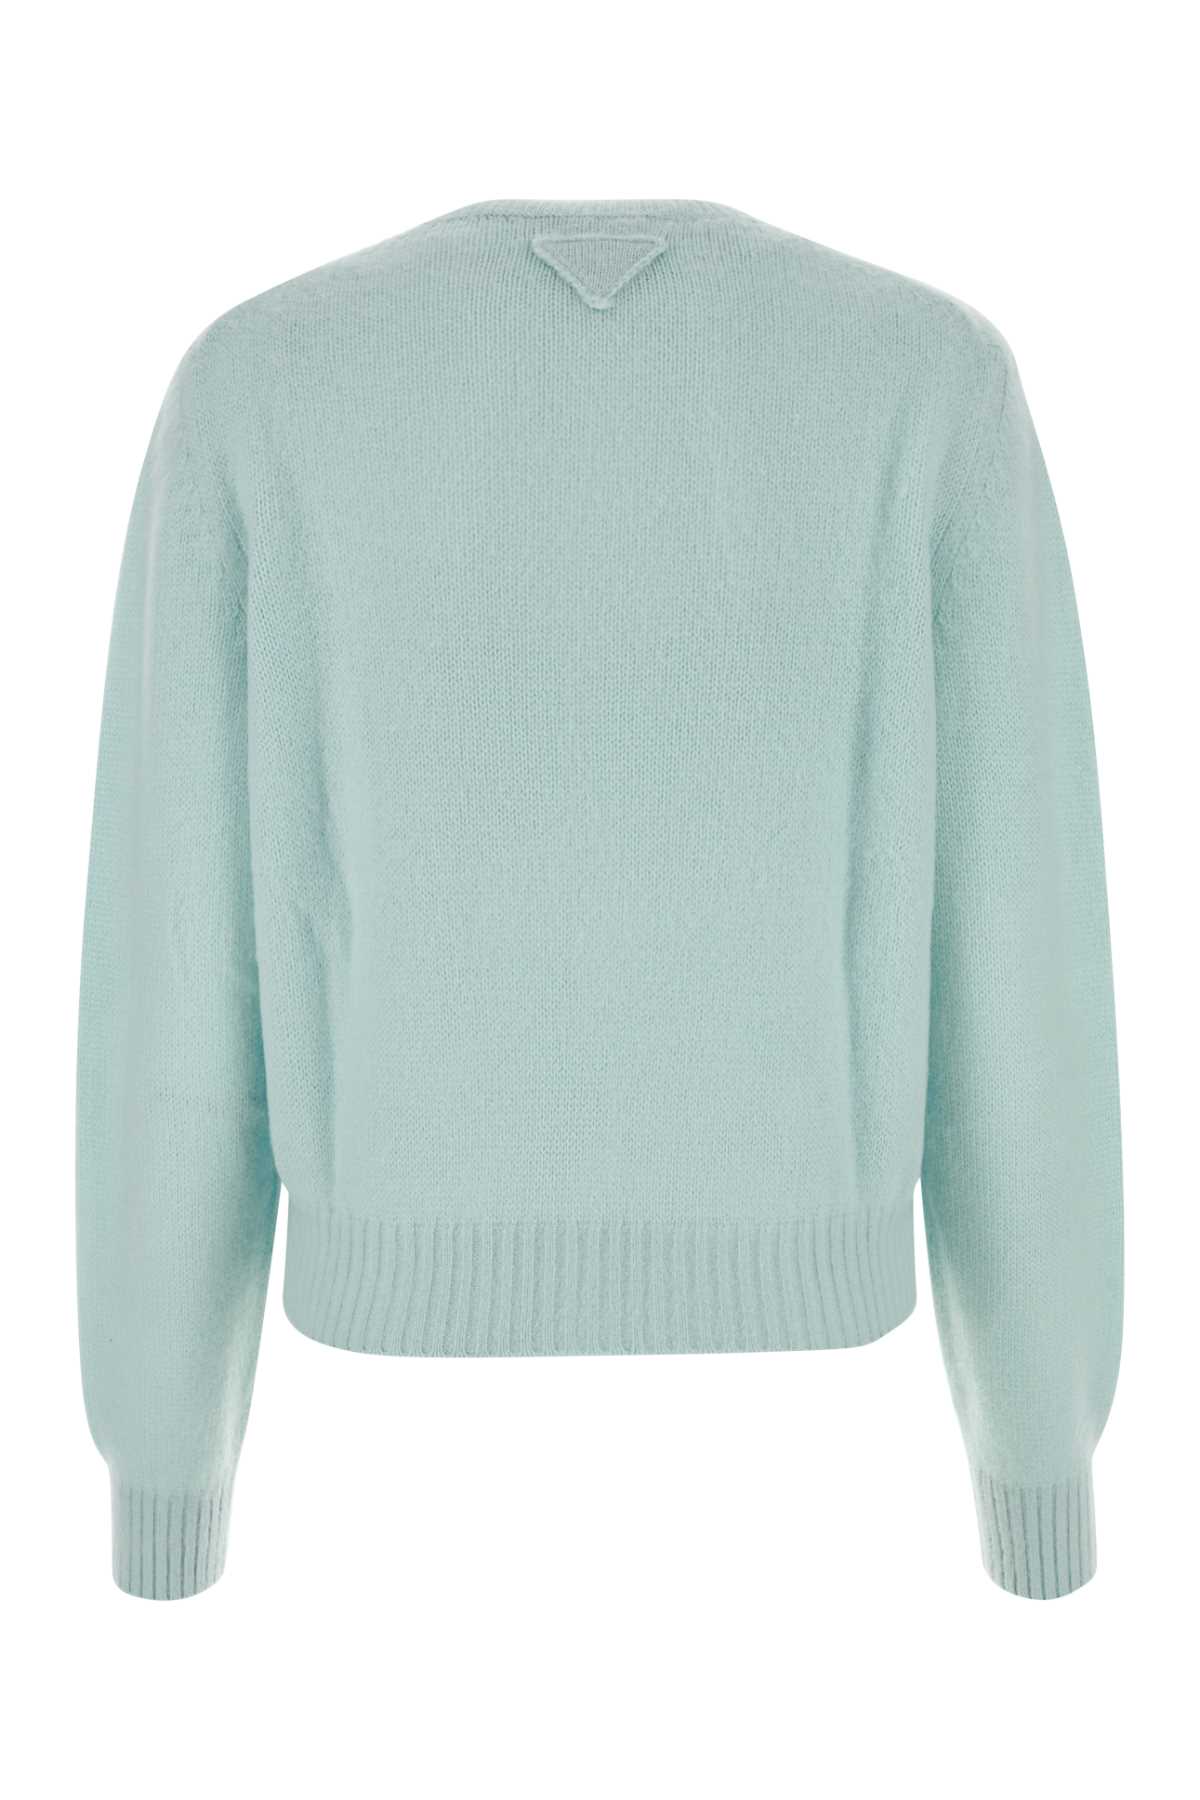 Prada Tiffany Cashmere Sweater In Clorofilla